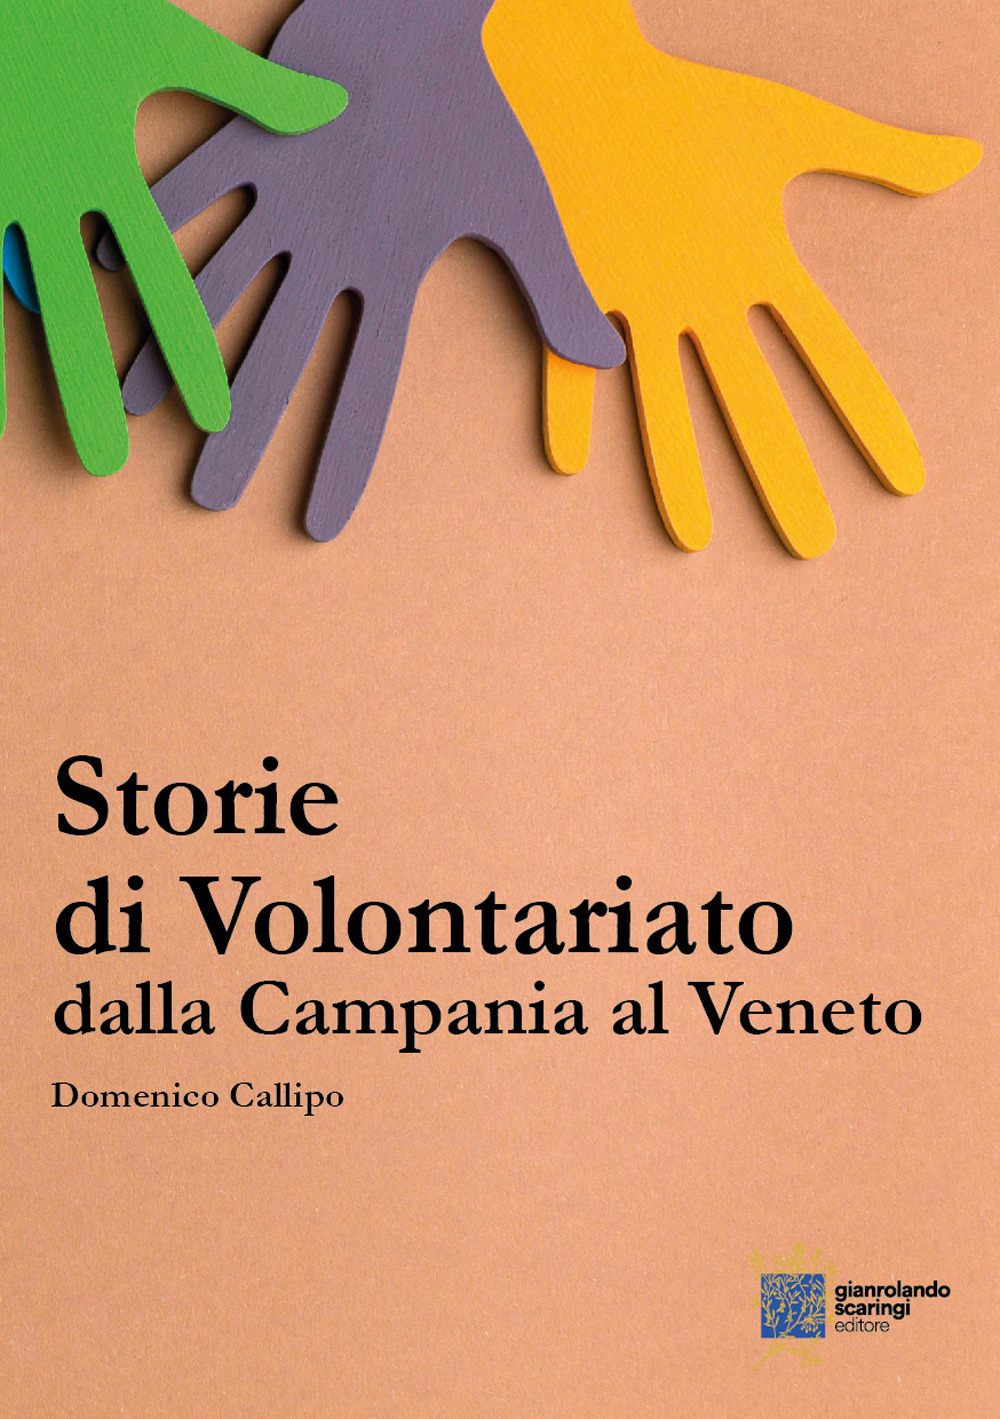 Storie di volontariato, dalla Campania al Veneto